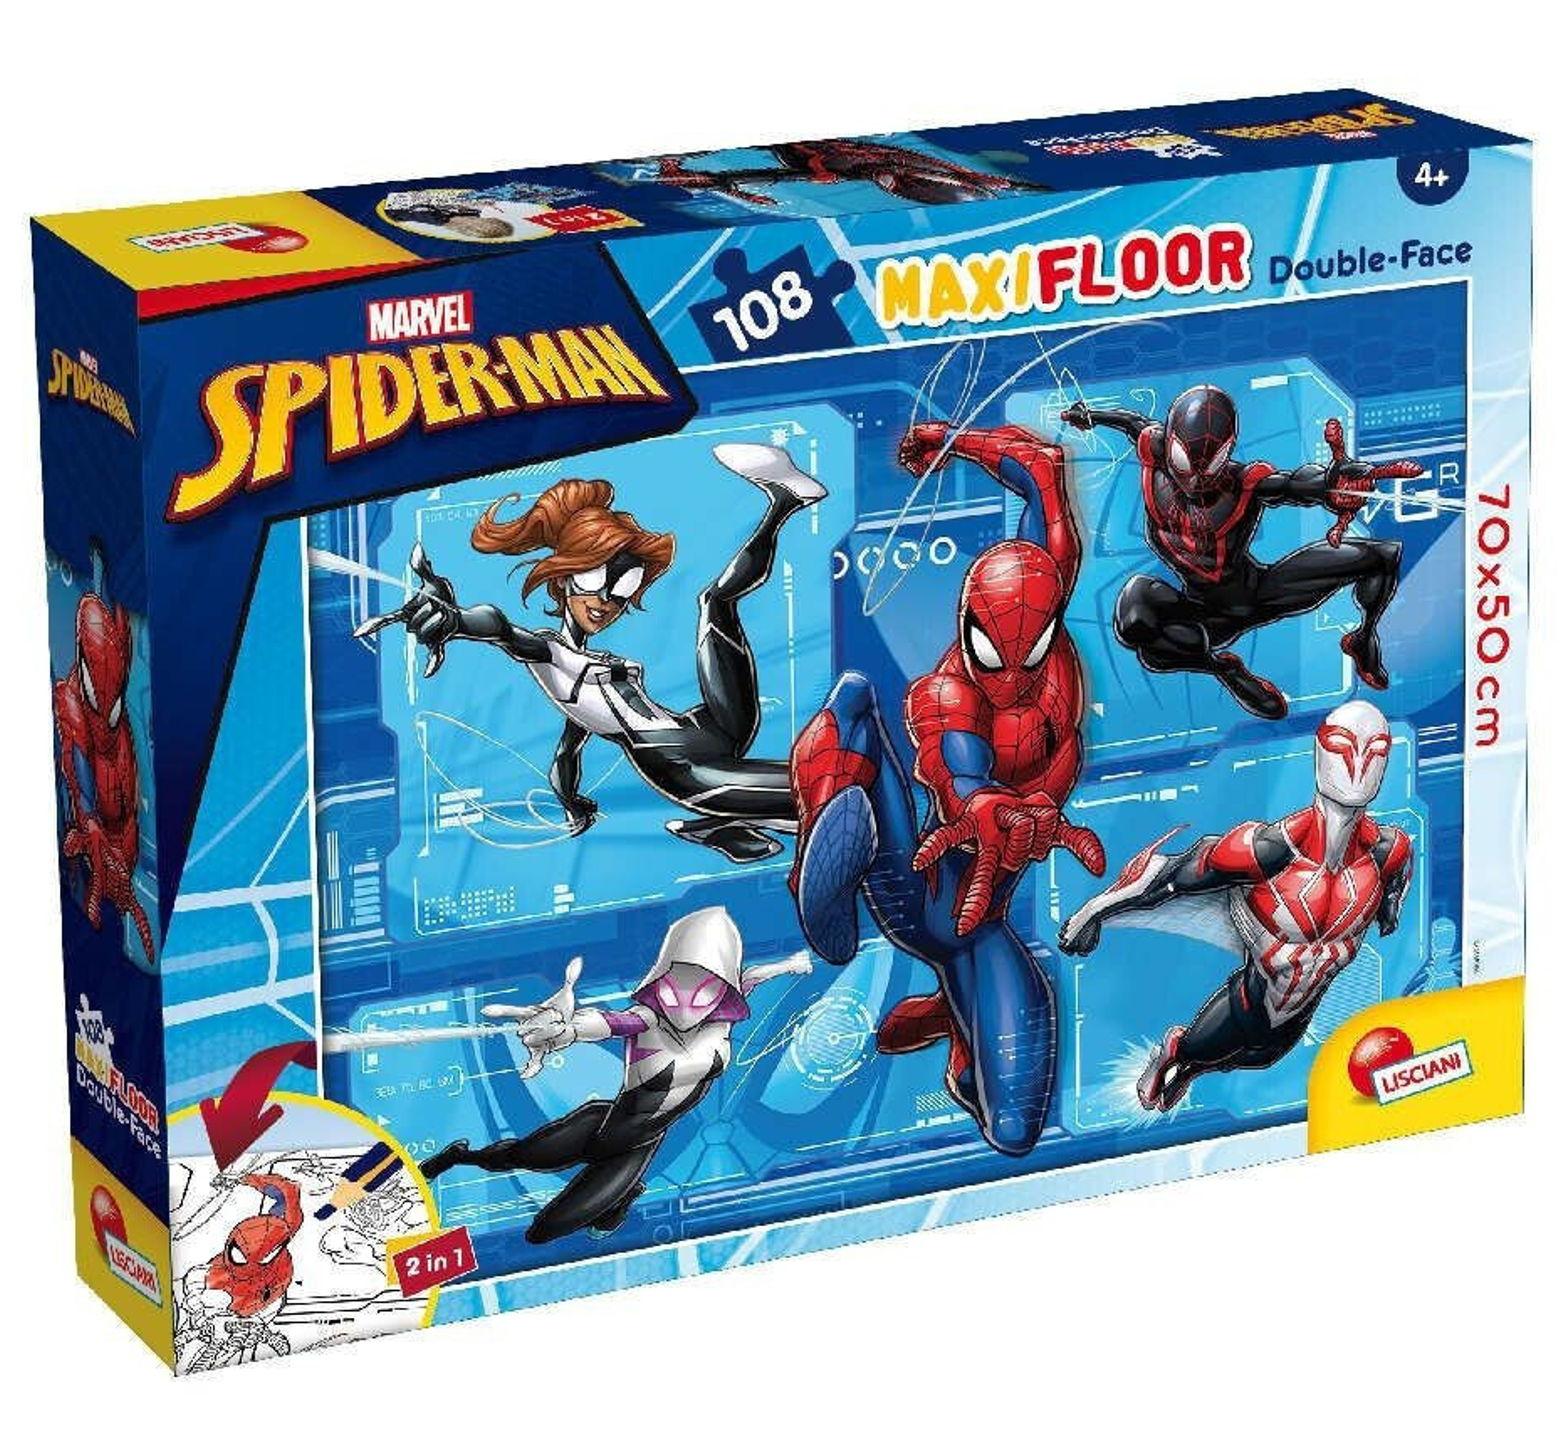 Παζλ δαπέδου 108 maxi κομματιών Spiderman